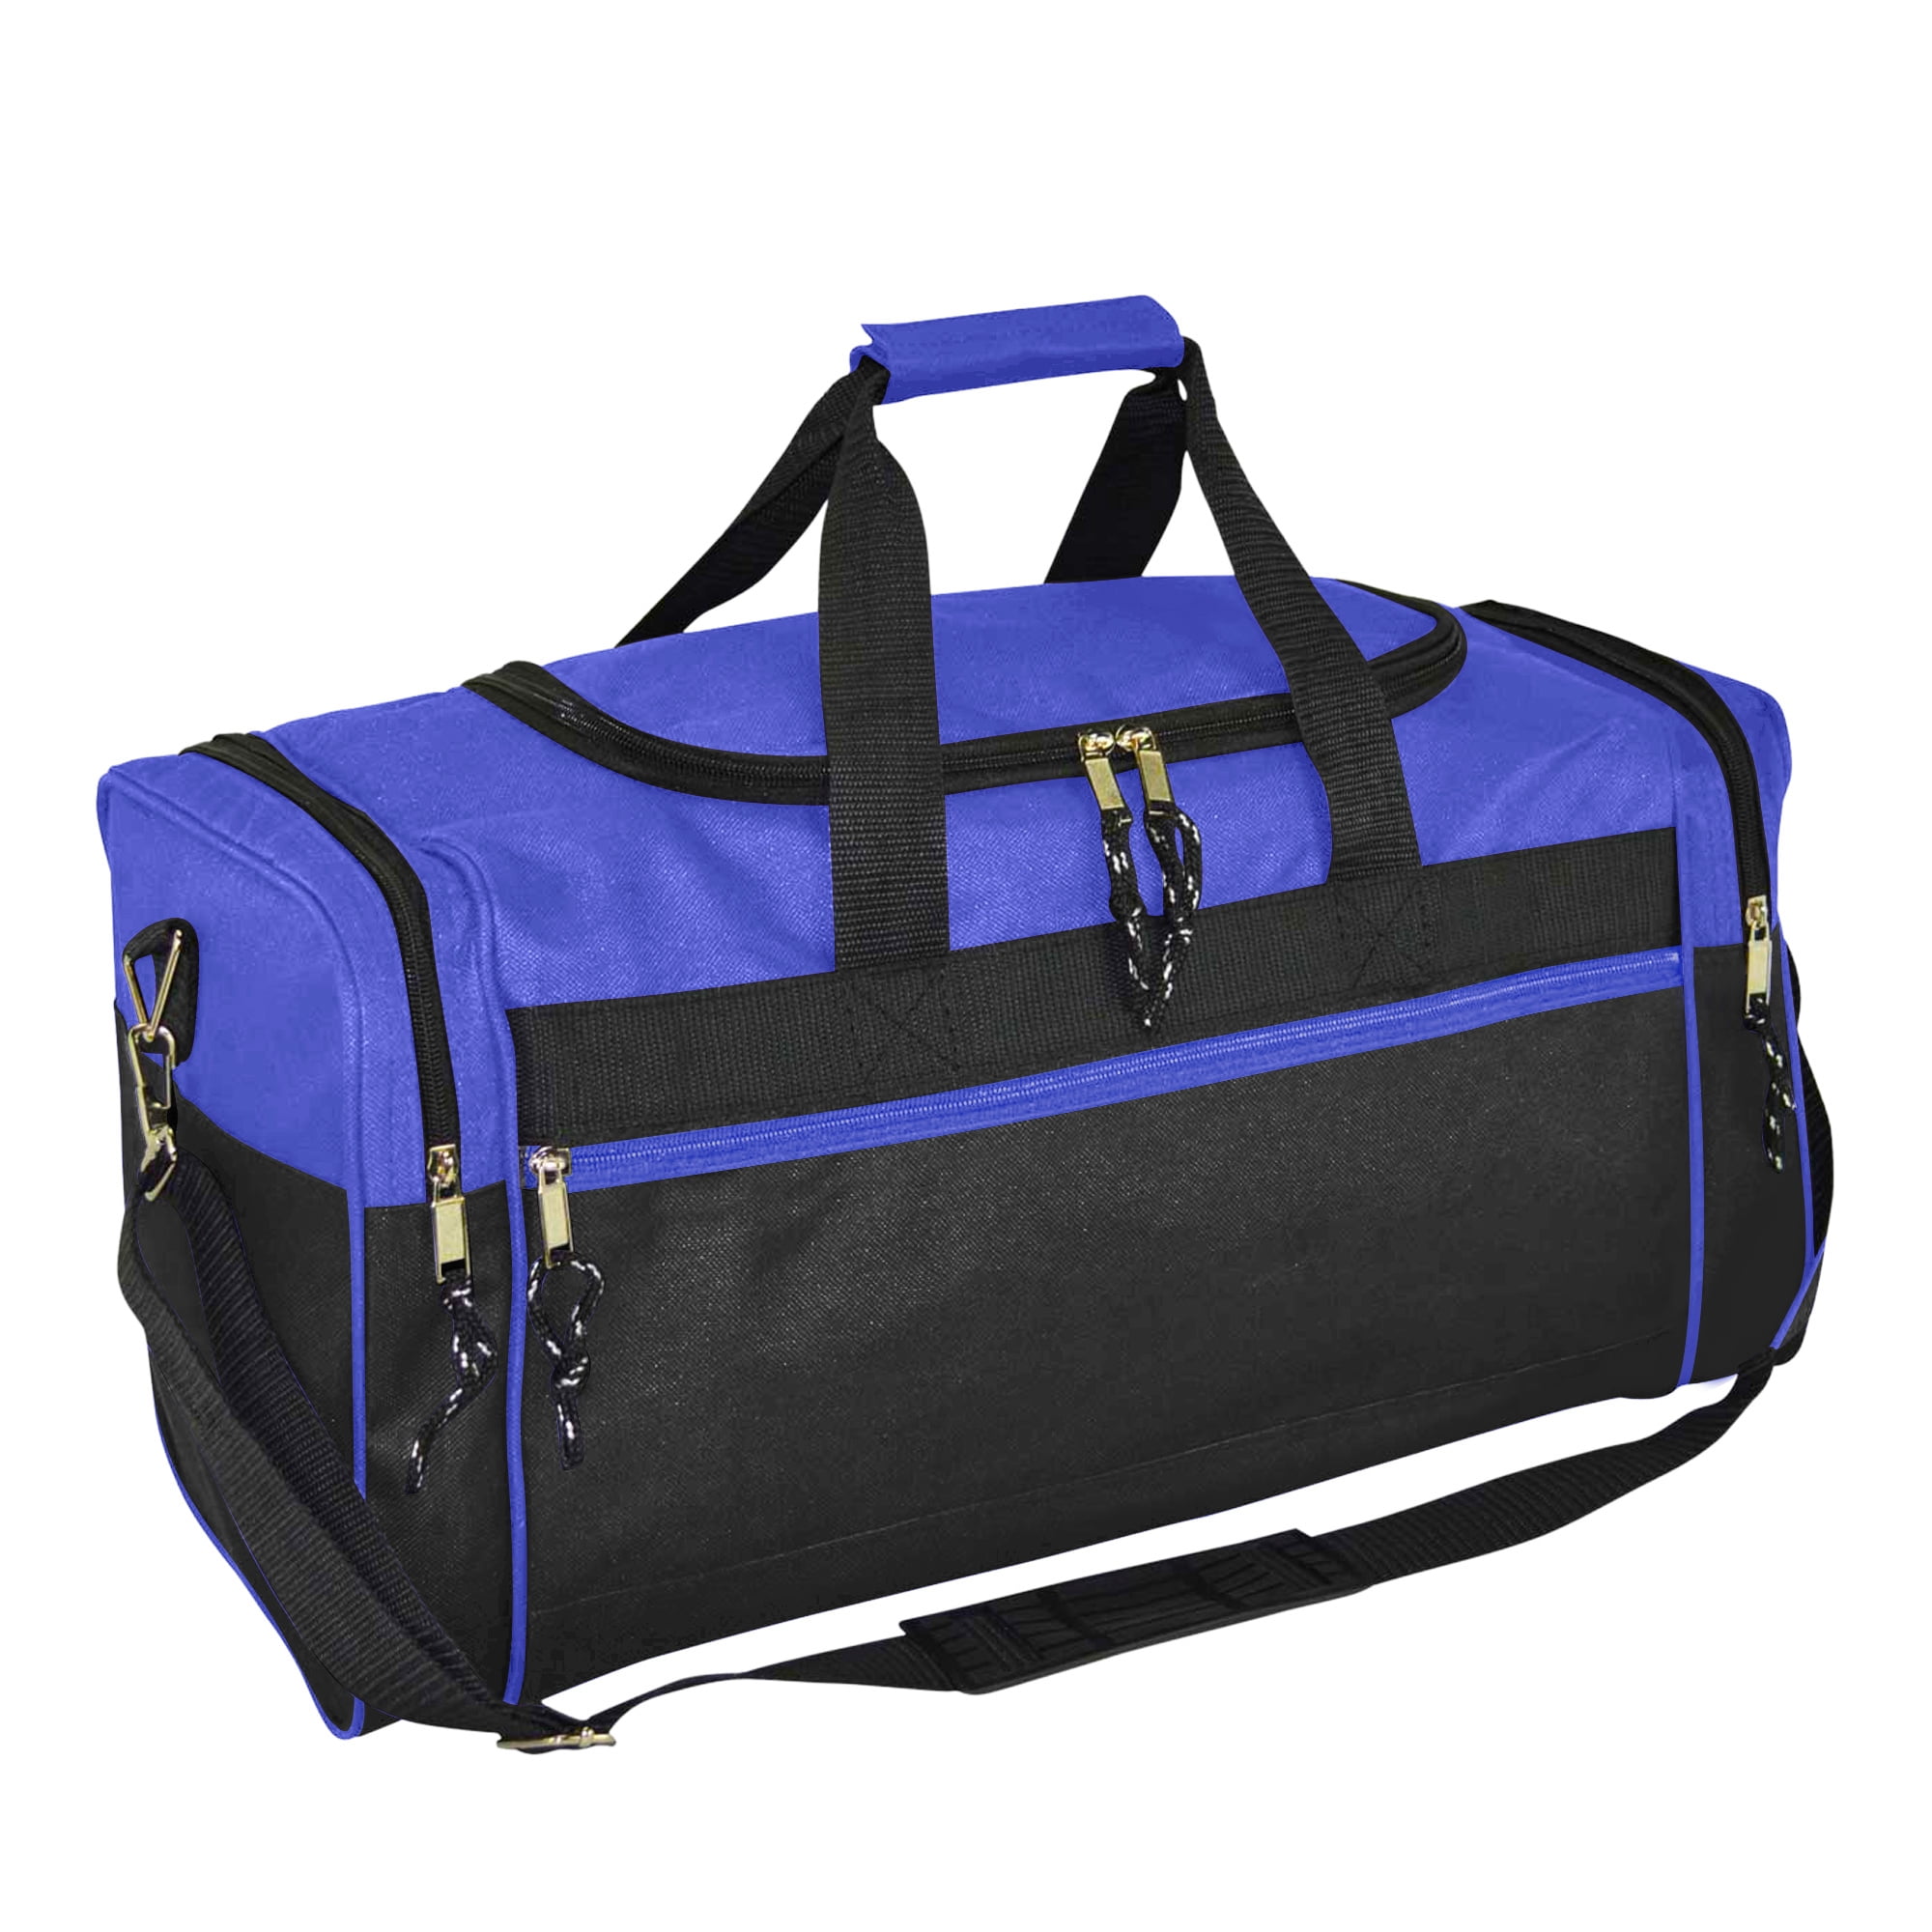 Travel Duffel Bag Sport Travel Duffel Bag Sports Tote Gym Holdalls Bag with Shoulder Strap for Gym Blue 